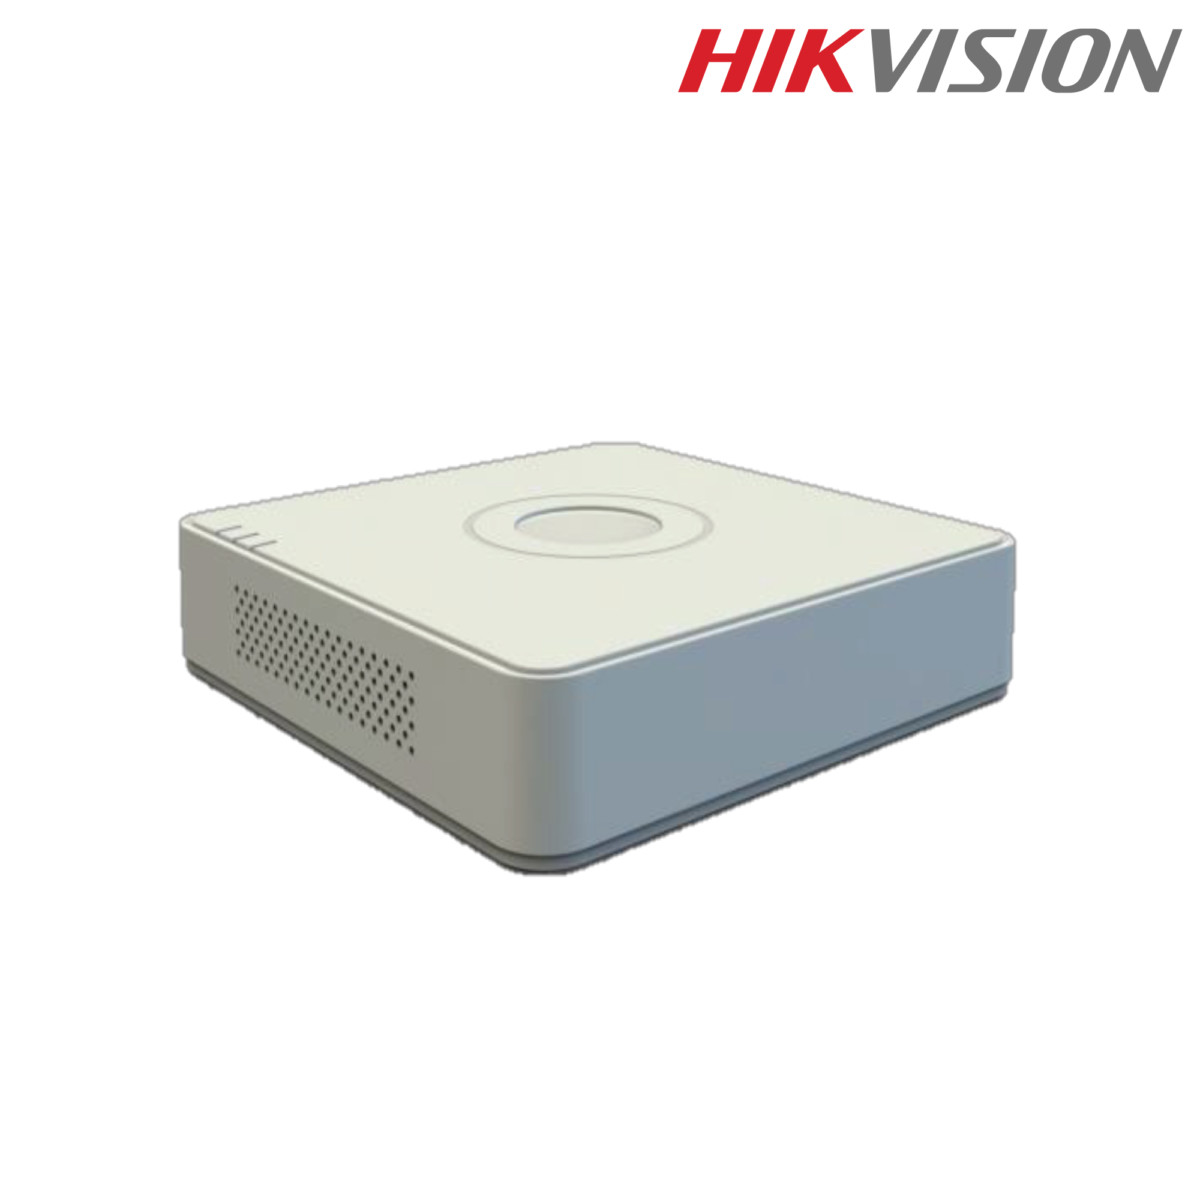 ชุด HIKVISION กล้องวงจรปิด 4 ตัว ระบบ HDCVI คมชัด 2 ล้าน (ติดตั้ง 11,900)